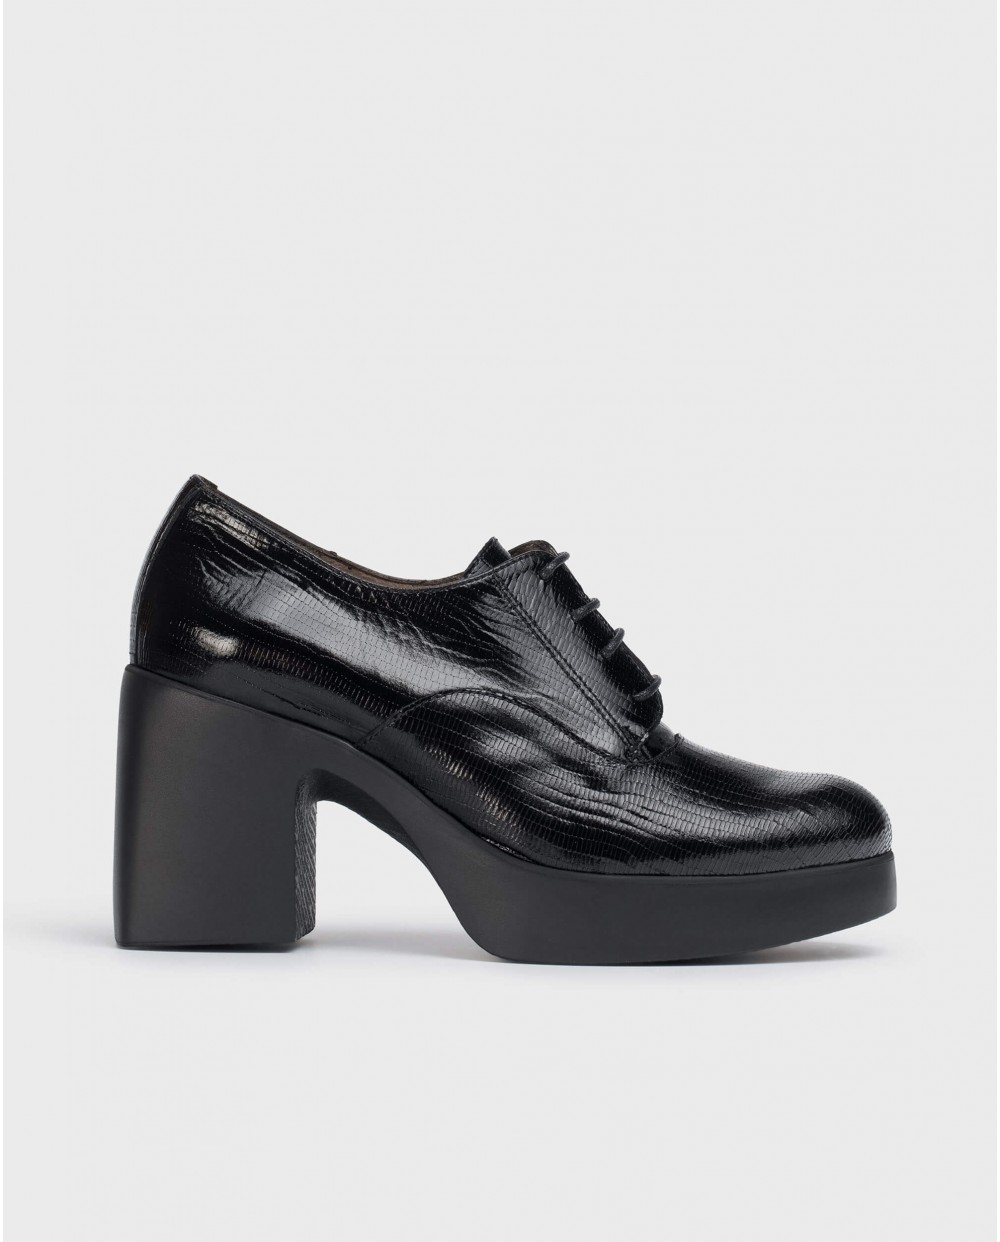 Wonders-Heels-Black Loira shoes.